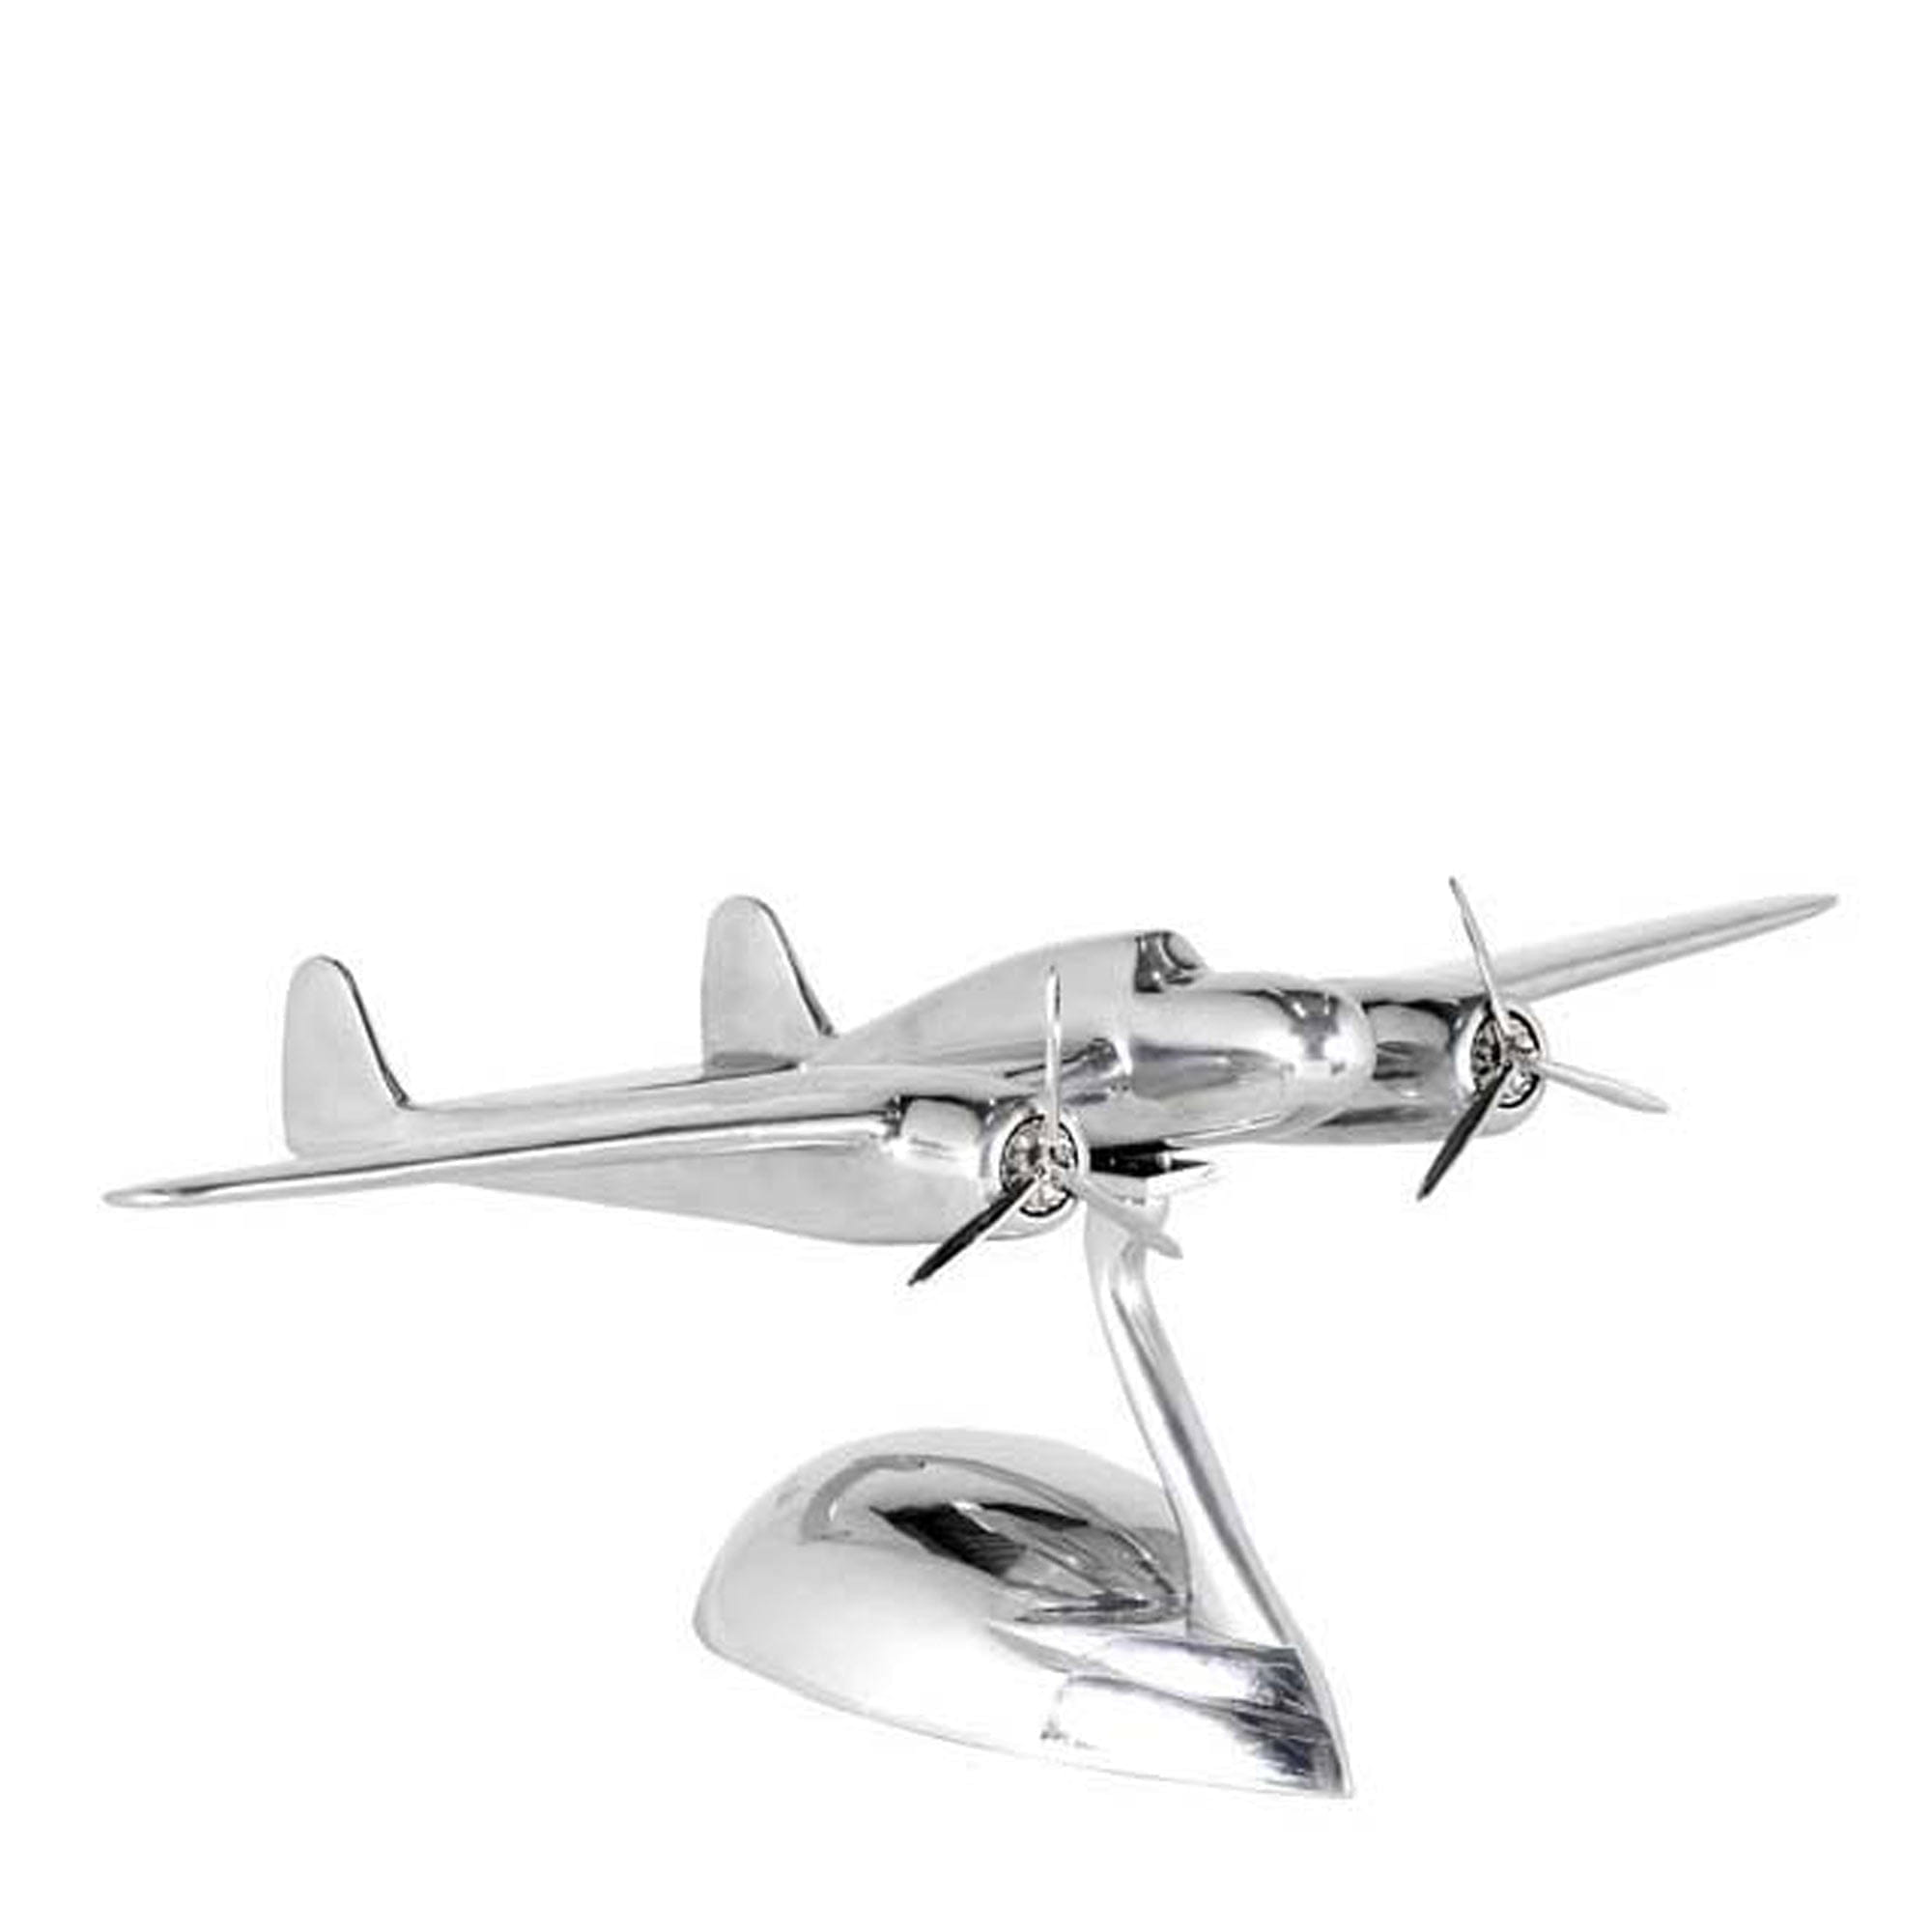 Купить металлический самолет. Eichholtz фигурка самолет Fokker Dixieland. Сувенир из металла самолет. Фигурка самолета металлическая. Металлический самолет на подставке.